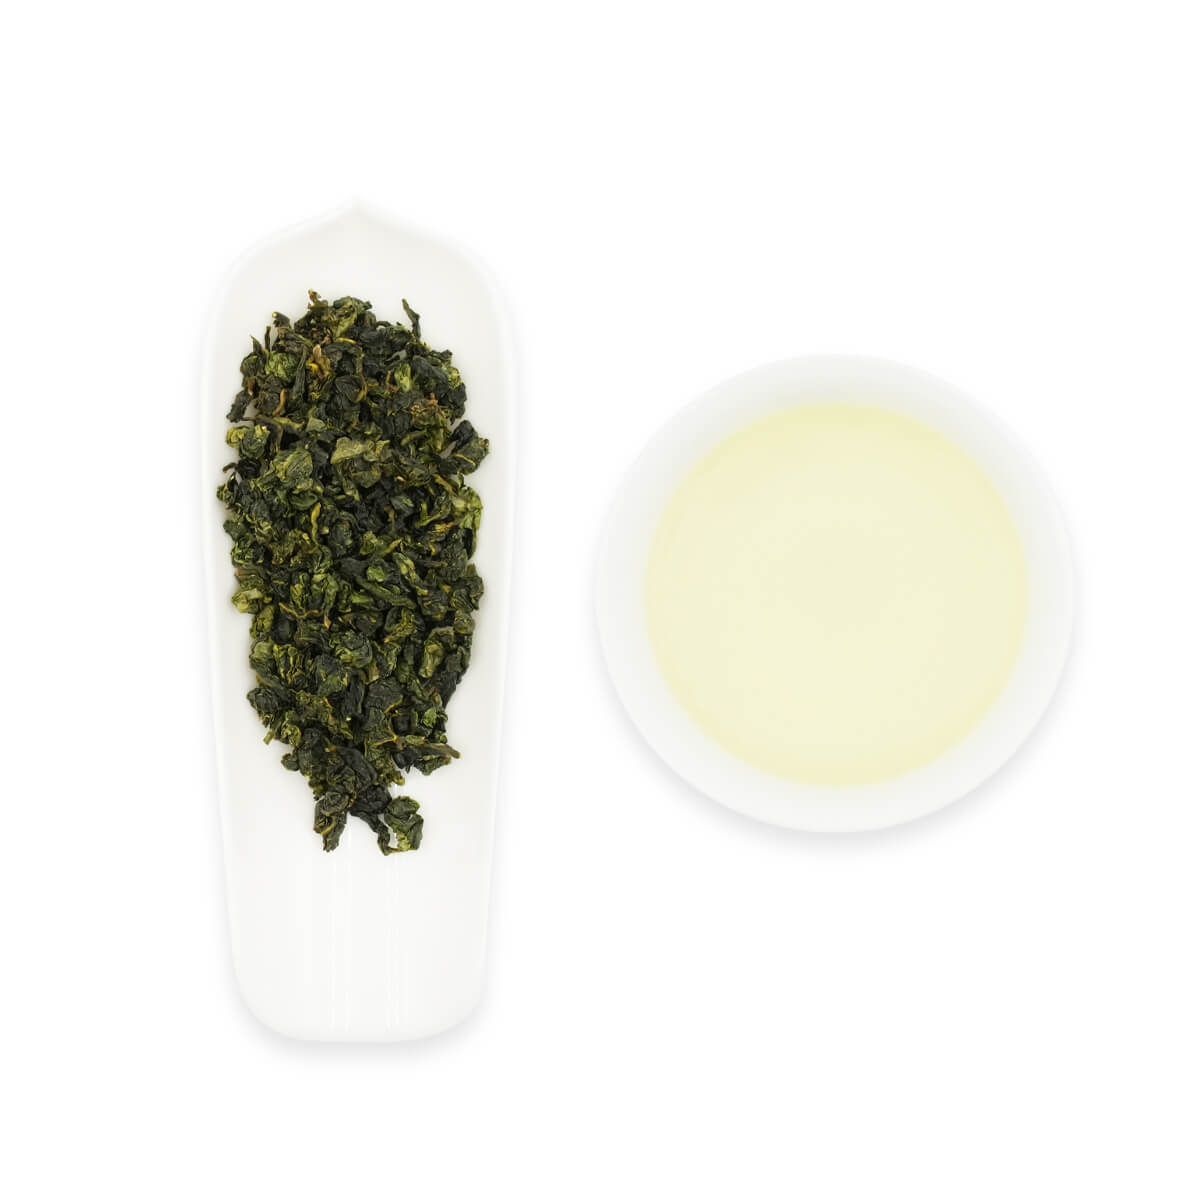 Gya Tea Co Milky Oolong Tea Loose Leaf - Oolong Tea Caffeinated - 100% Natural Oolong Loose Leaf Tea with No Artificial Ingredients - Brew As Hot or